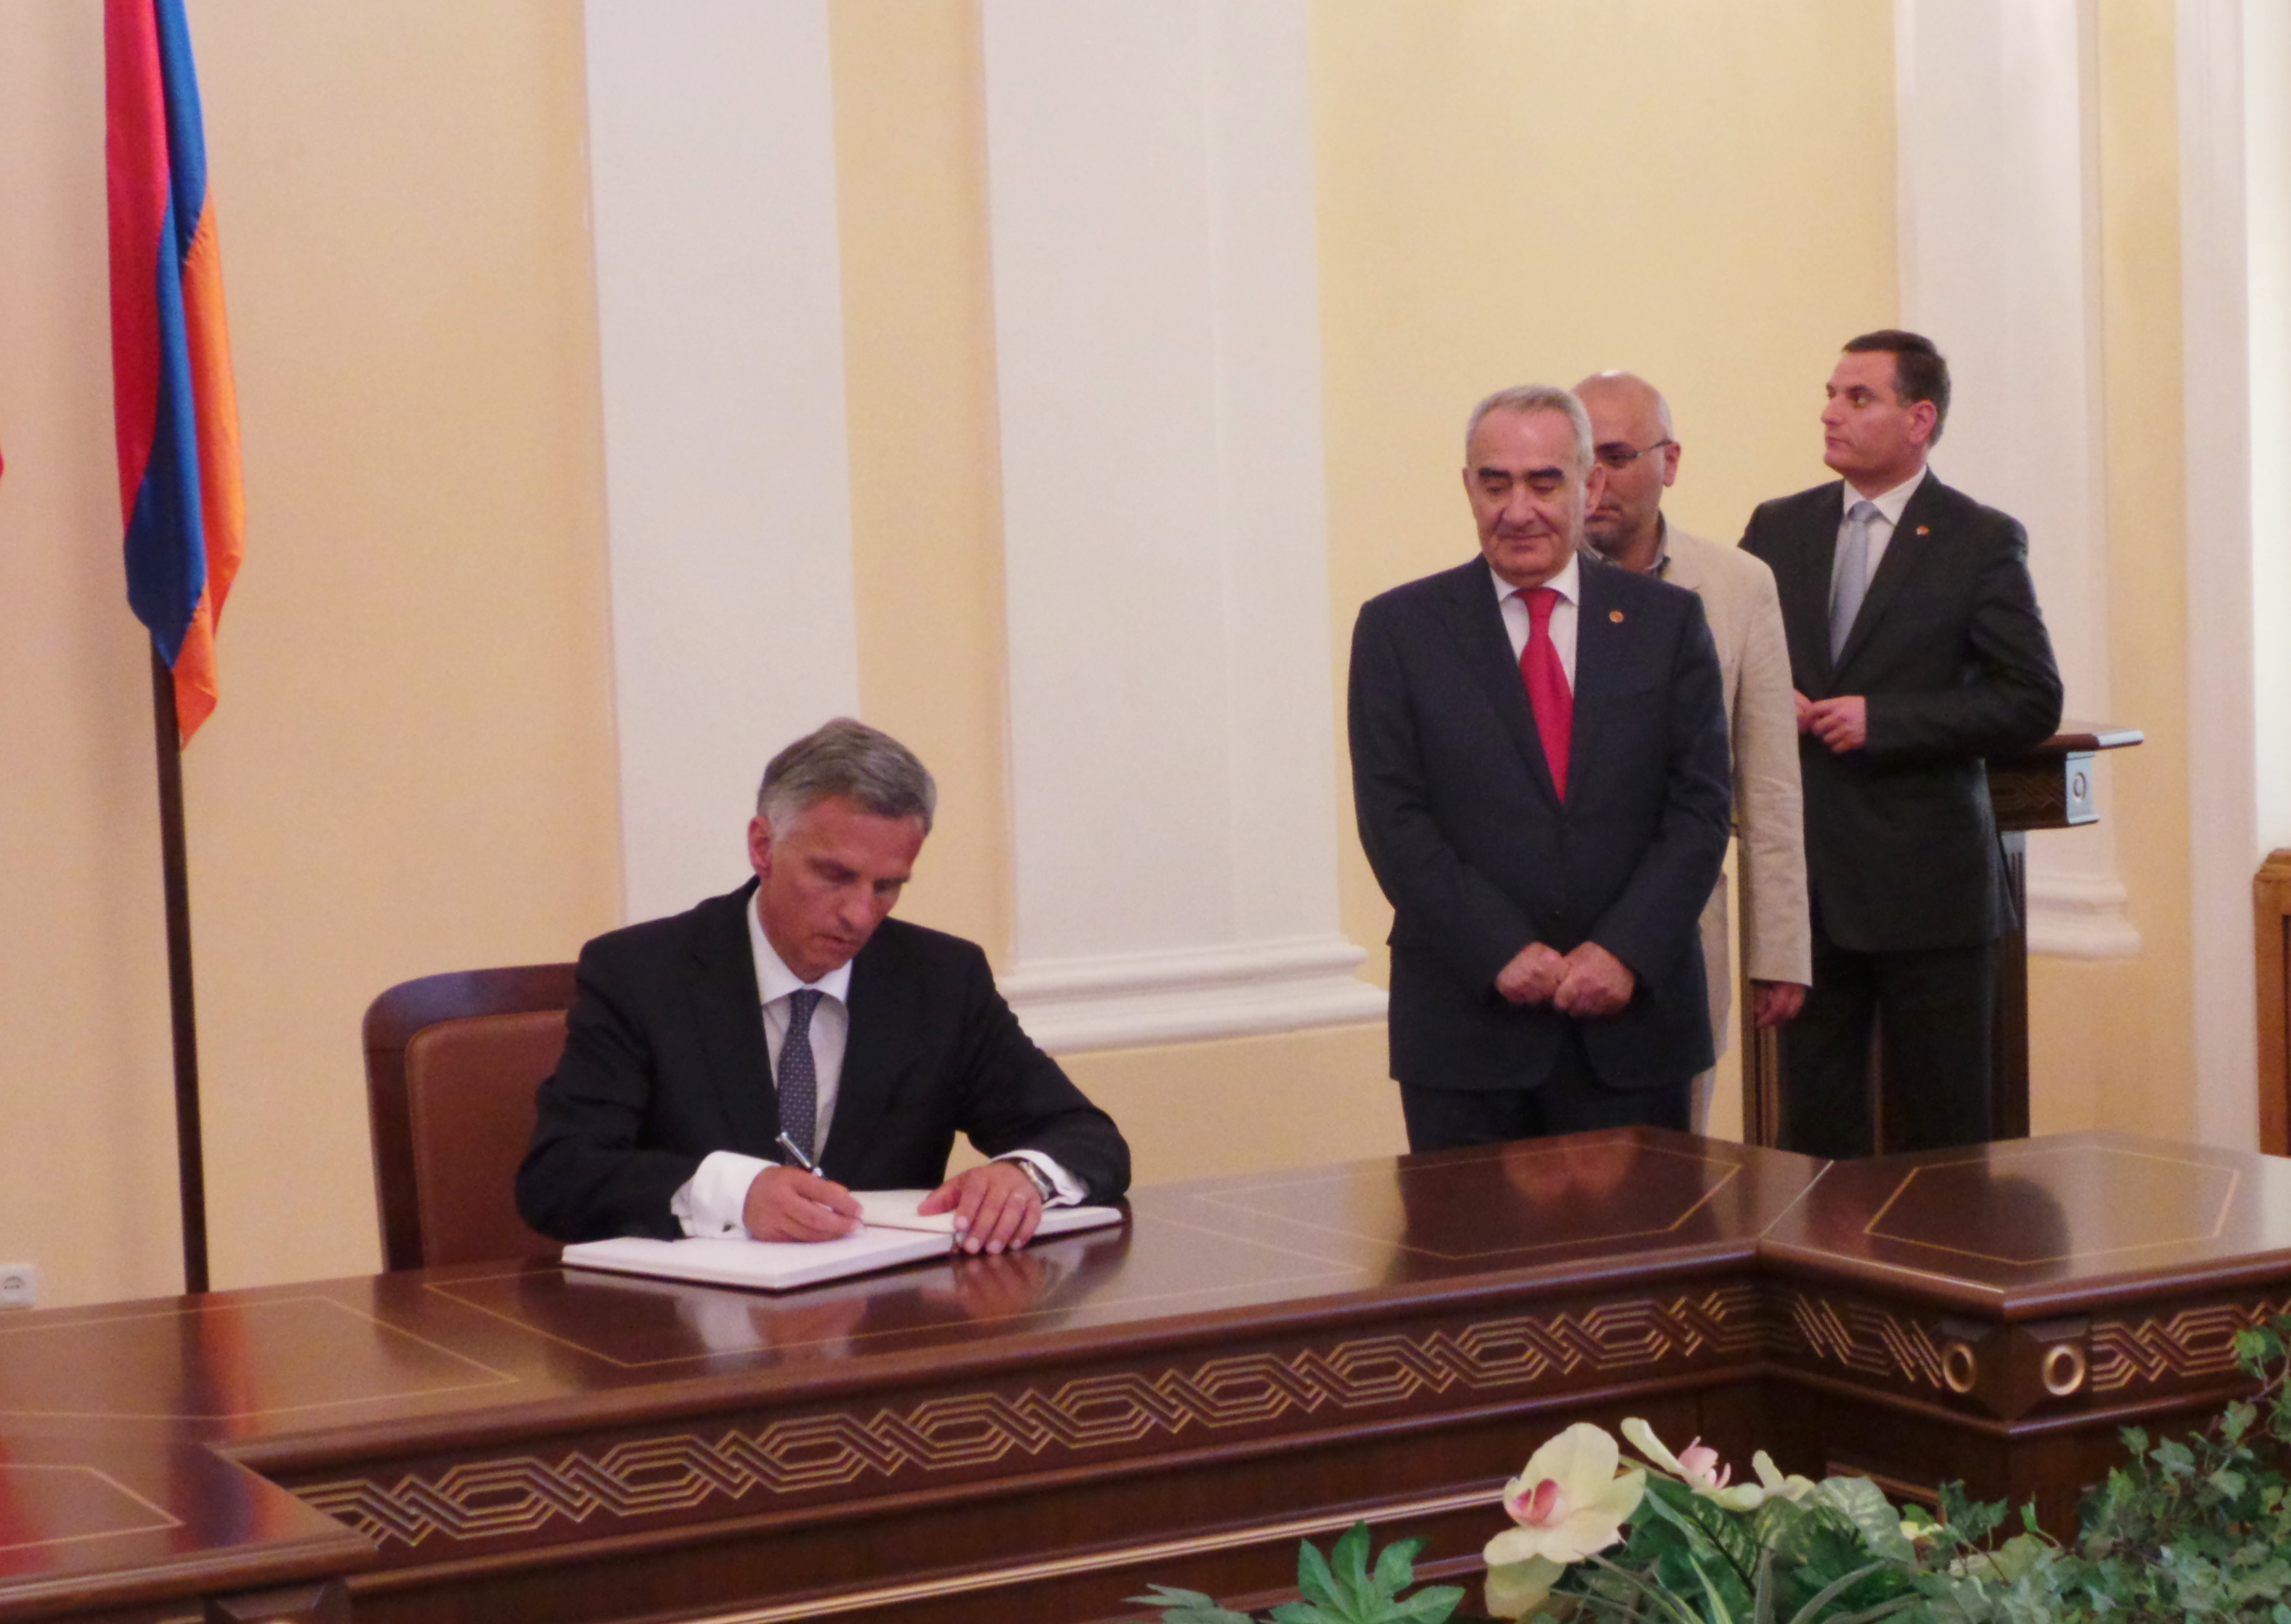 Bundespräsident Didier Burkhalter trägt sich nach einem Gespräch mit Parlamentsmitgliedern ins Gästebuch des armenischen Parlaments ein. Rechts neben ihm: Parlamentspräsident Galust Sahakyan.